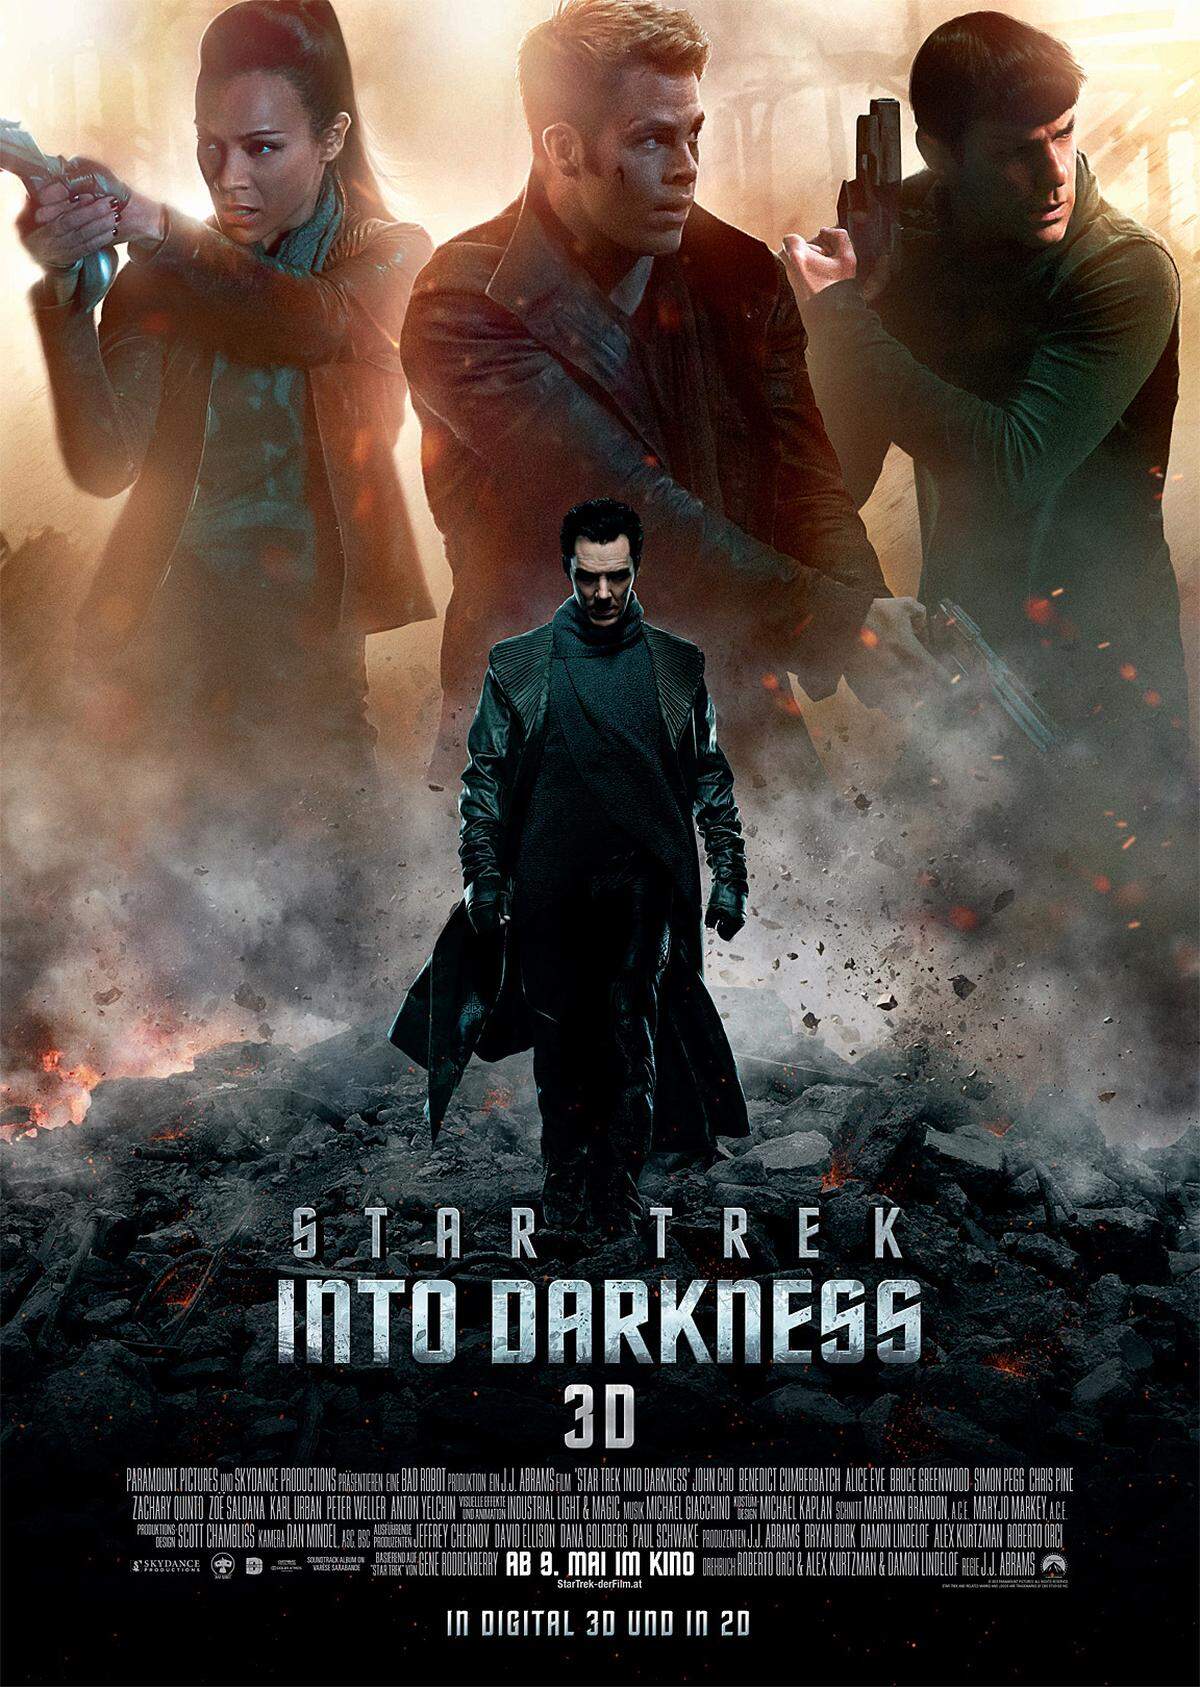 Am 9. Mai kommt "Star Trek Into Darkness", der zwölfte Teil der Weltraumsaga ins Kino. Kurzkritik zu den bisherigen elf Filmen von Wolfgang Greber.